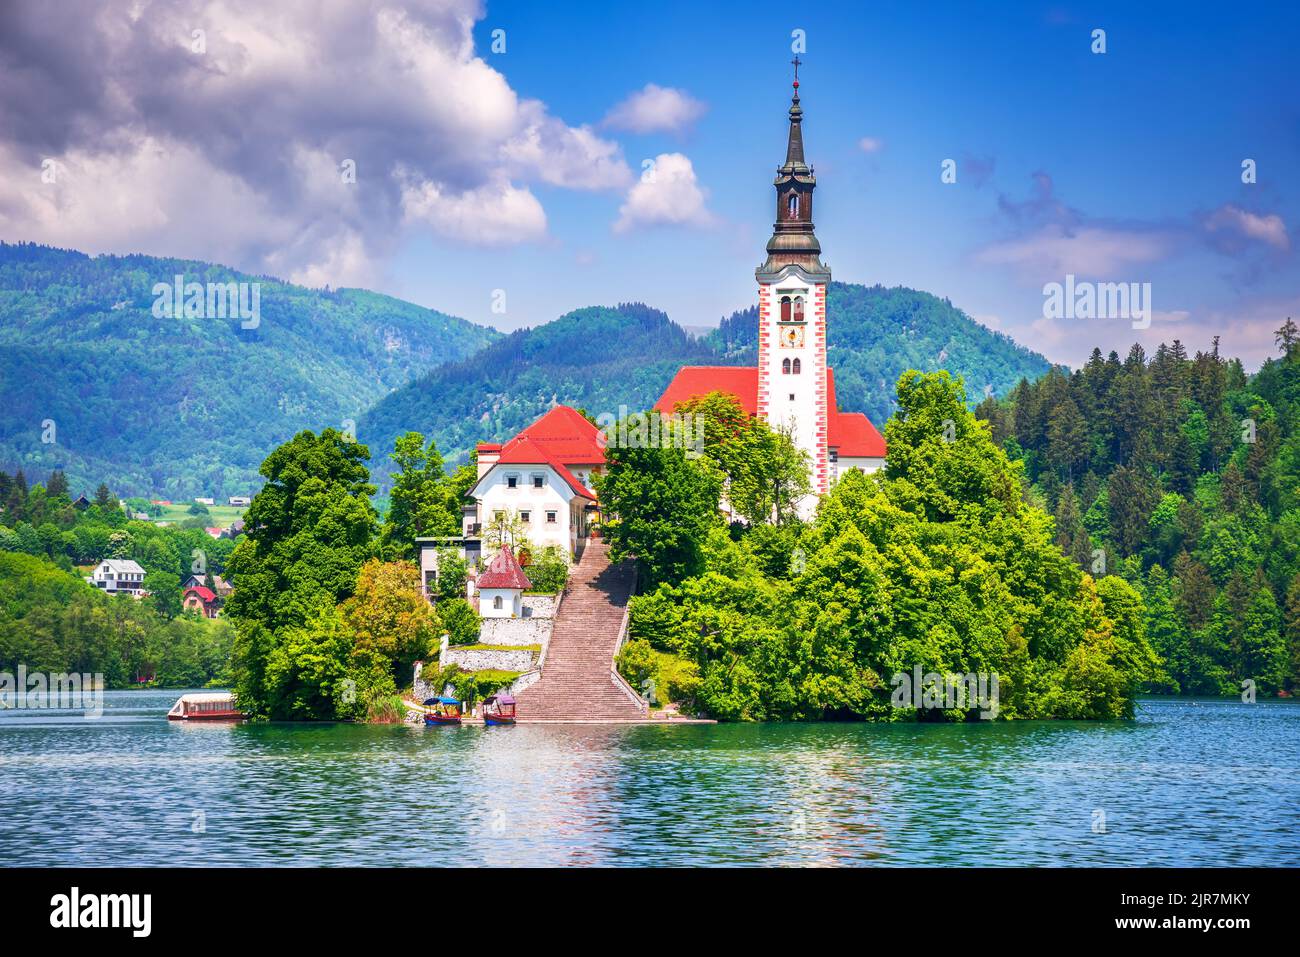 Bled, Eslovenia. Impresionante lago Bled, isla e iglesia con fondo de la cordillera de los Alpes Julianos, centro de atención en Europa. Foto de stock